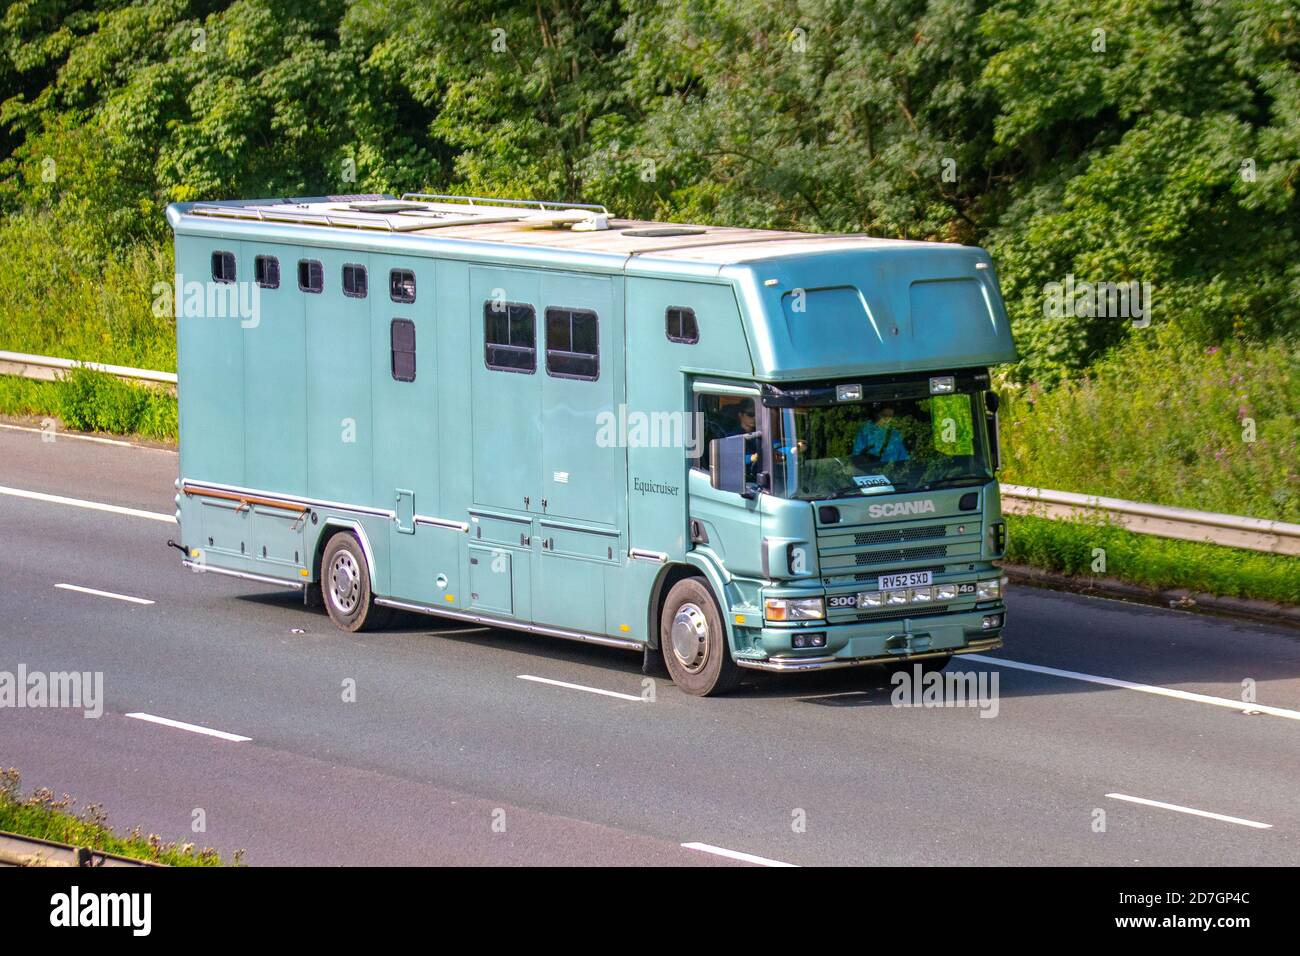 Van di crine; cabina costruita dell'autobus sopra il trasporto dell'animale equino di conversione del furgone che viaggia sull'autostrada M6, Lancashire, Regno Unito Foto Stock